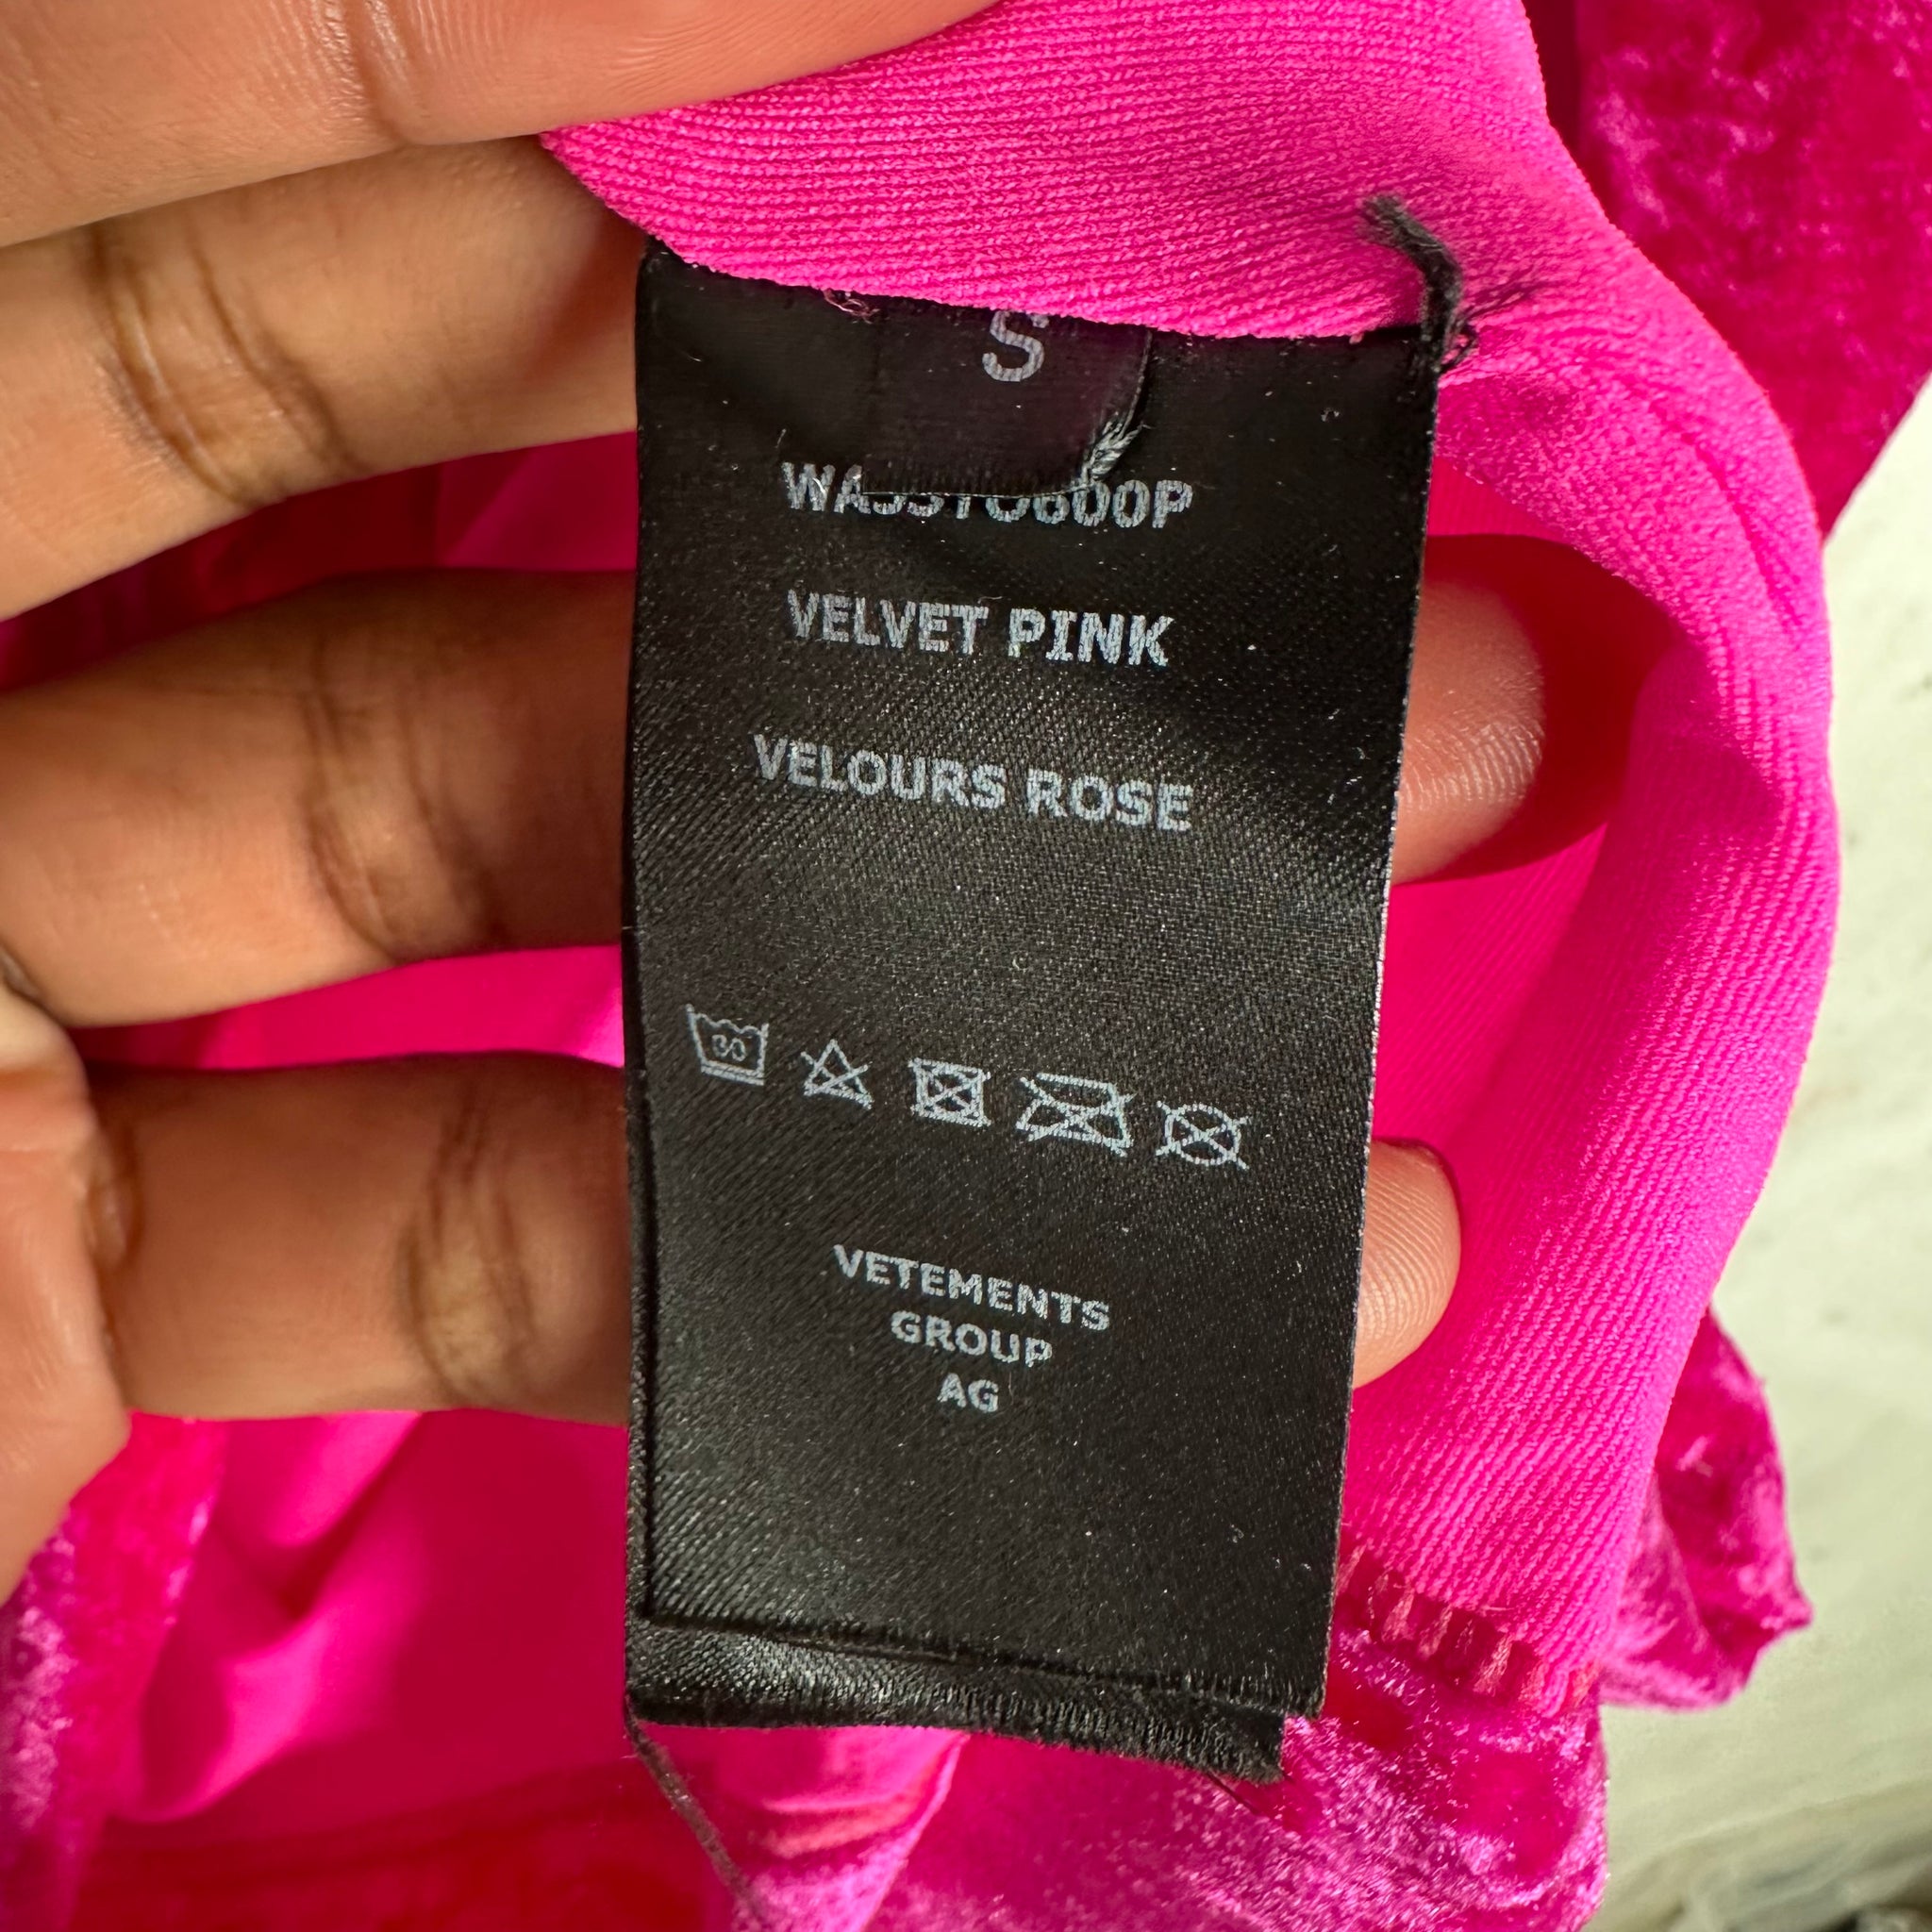 VETEMENTS Velvet Pink Skin Tight Shirt